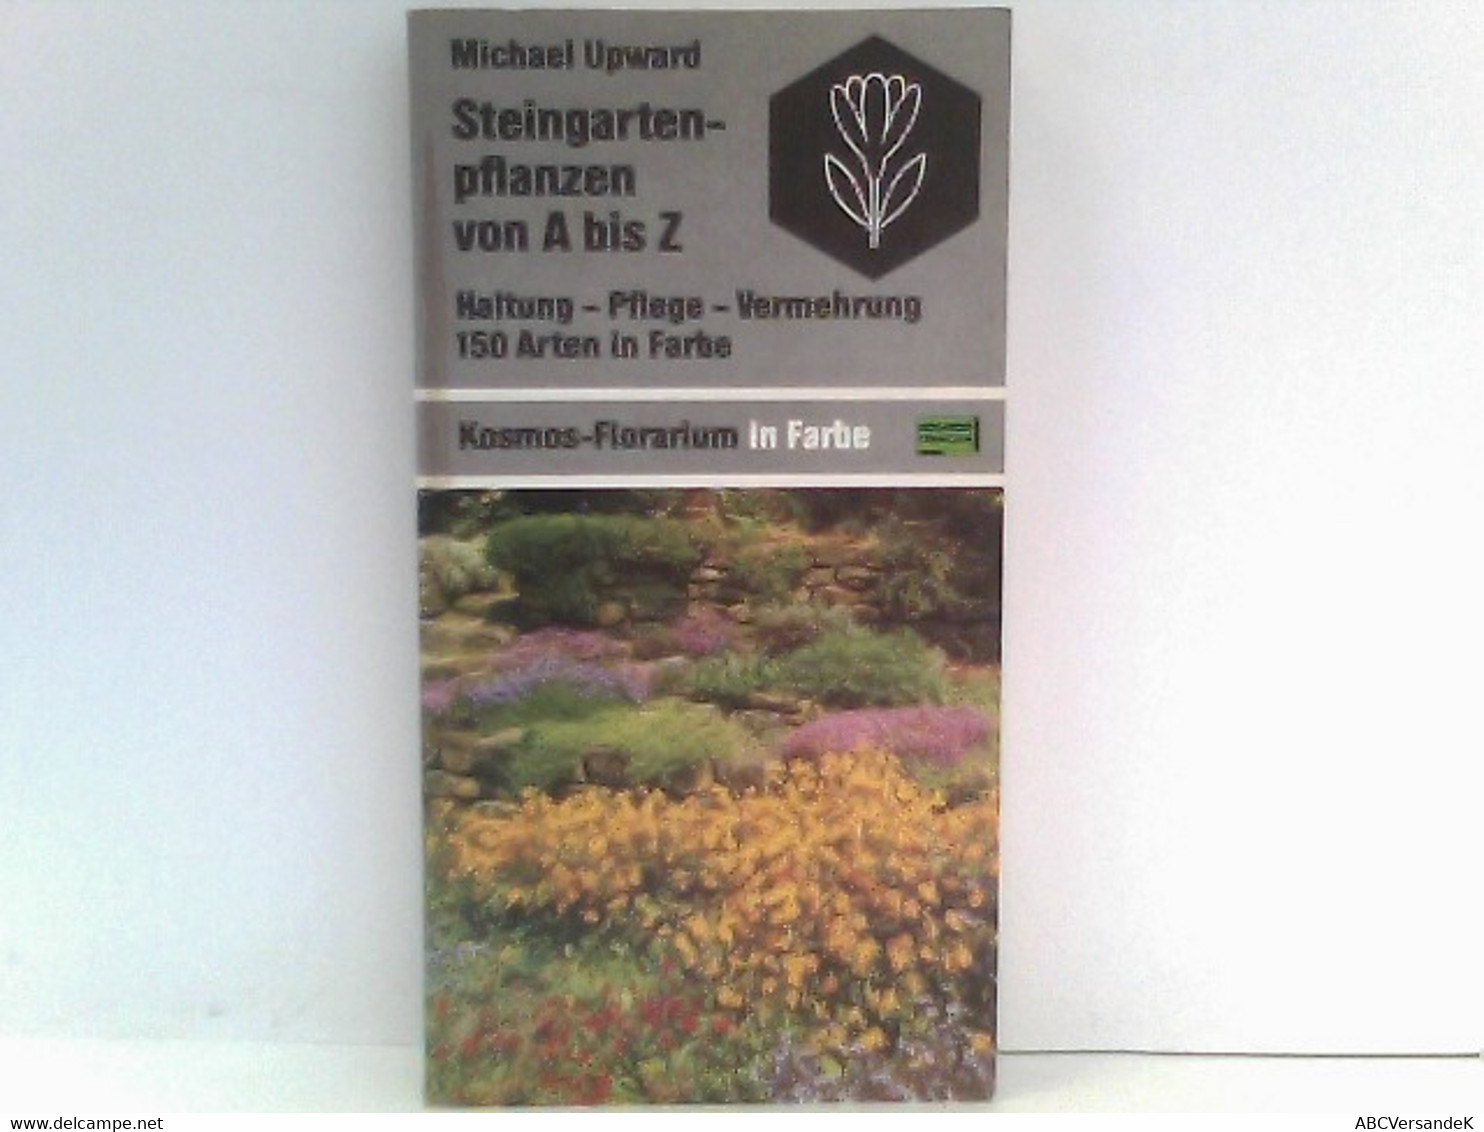 Steingartenpflanzen Von A Bis Z: Haltung - Pflege - Vermehrung. 150 Arten In Farbe (Kosmos-Florarium In Farbe) - Natuur